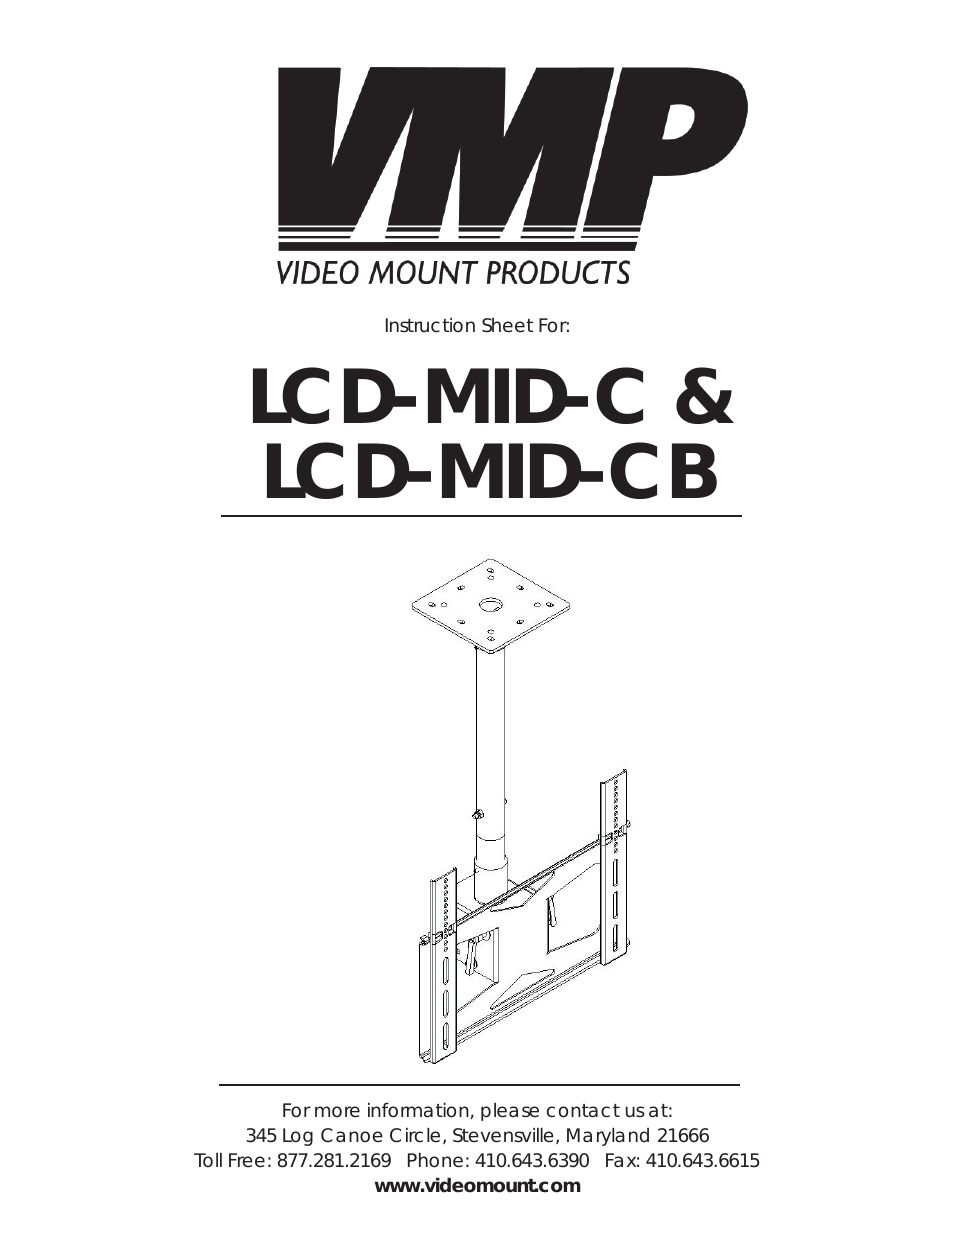 LCD-MID-CB